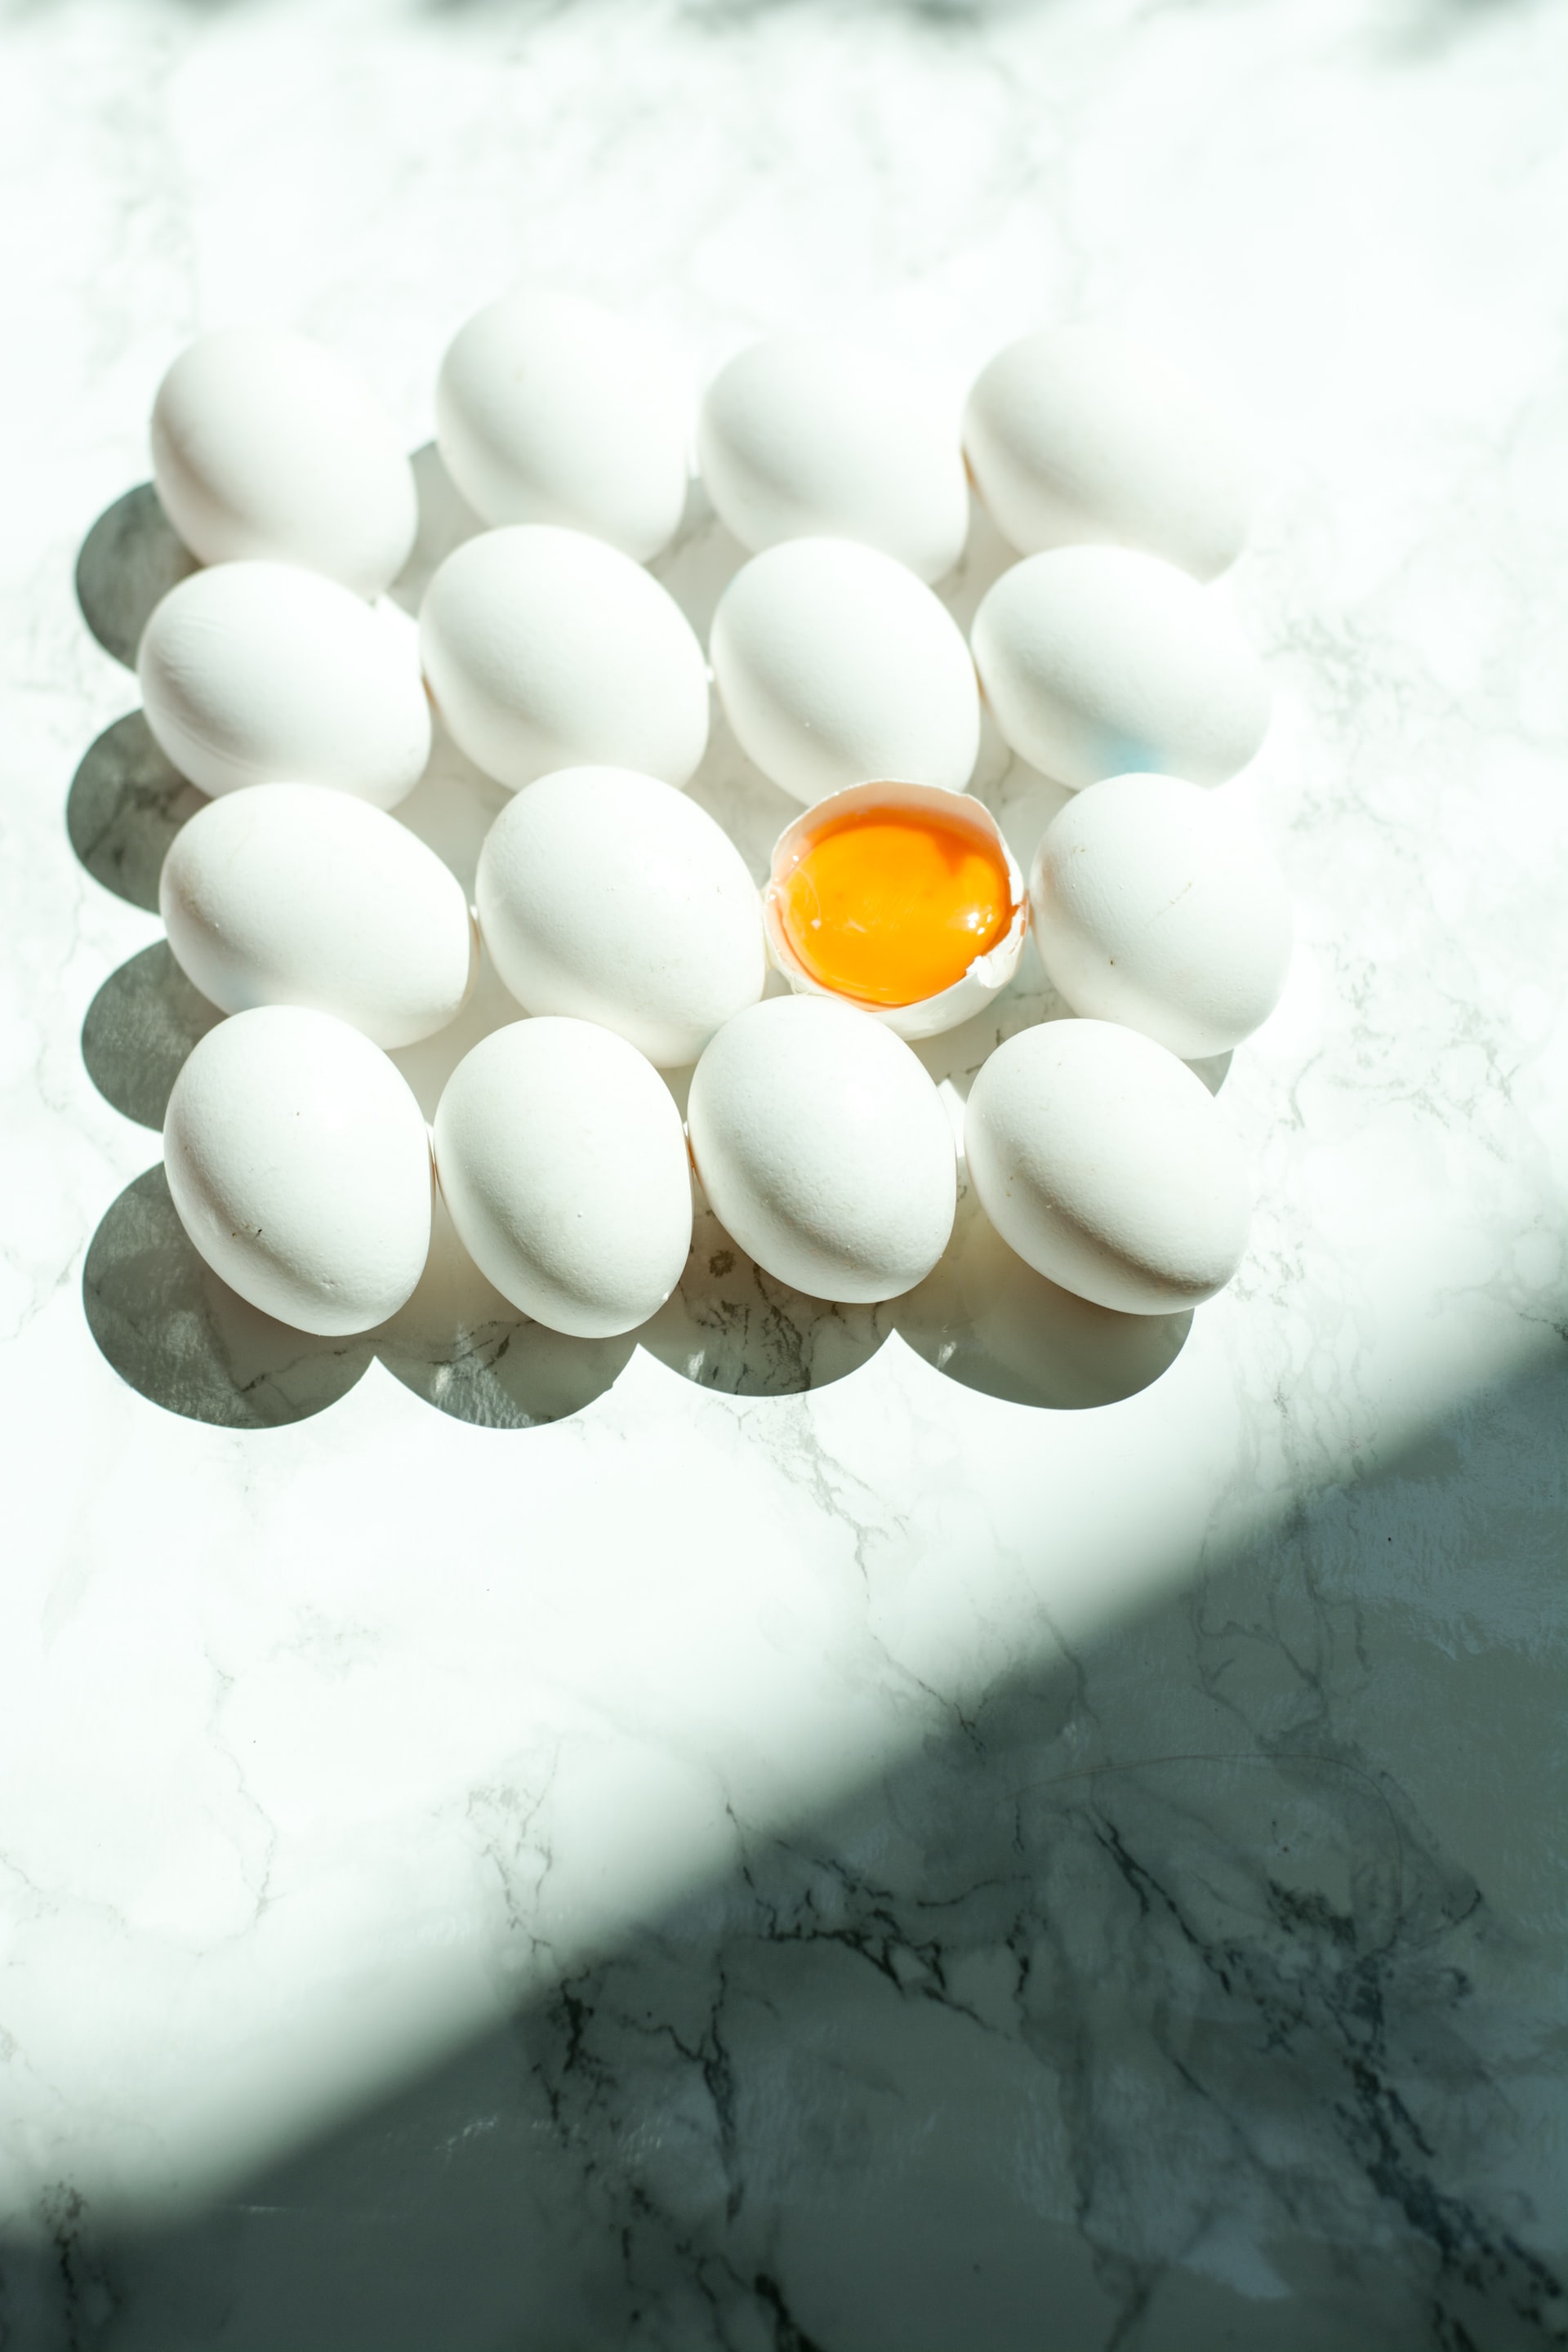 Βραστά αυγά όχι μόνο στο τοστ- 8 τρόποι για να τα εντάξεις στα πιο νόστιμα σνακ